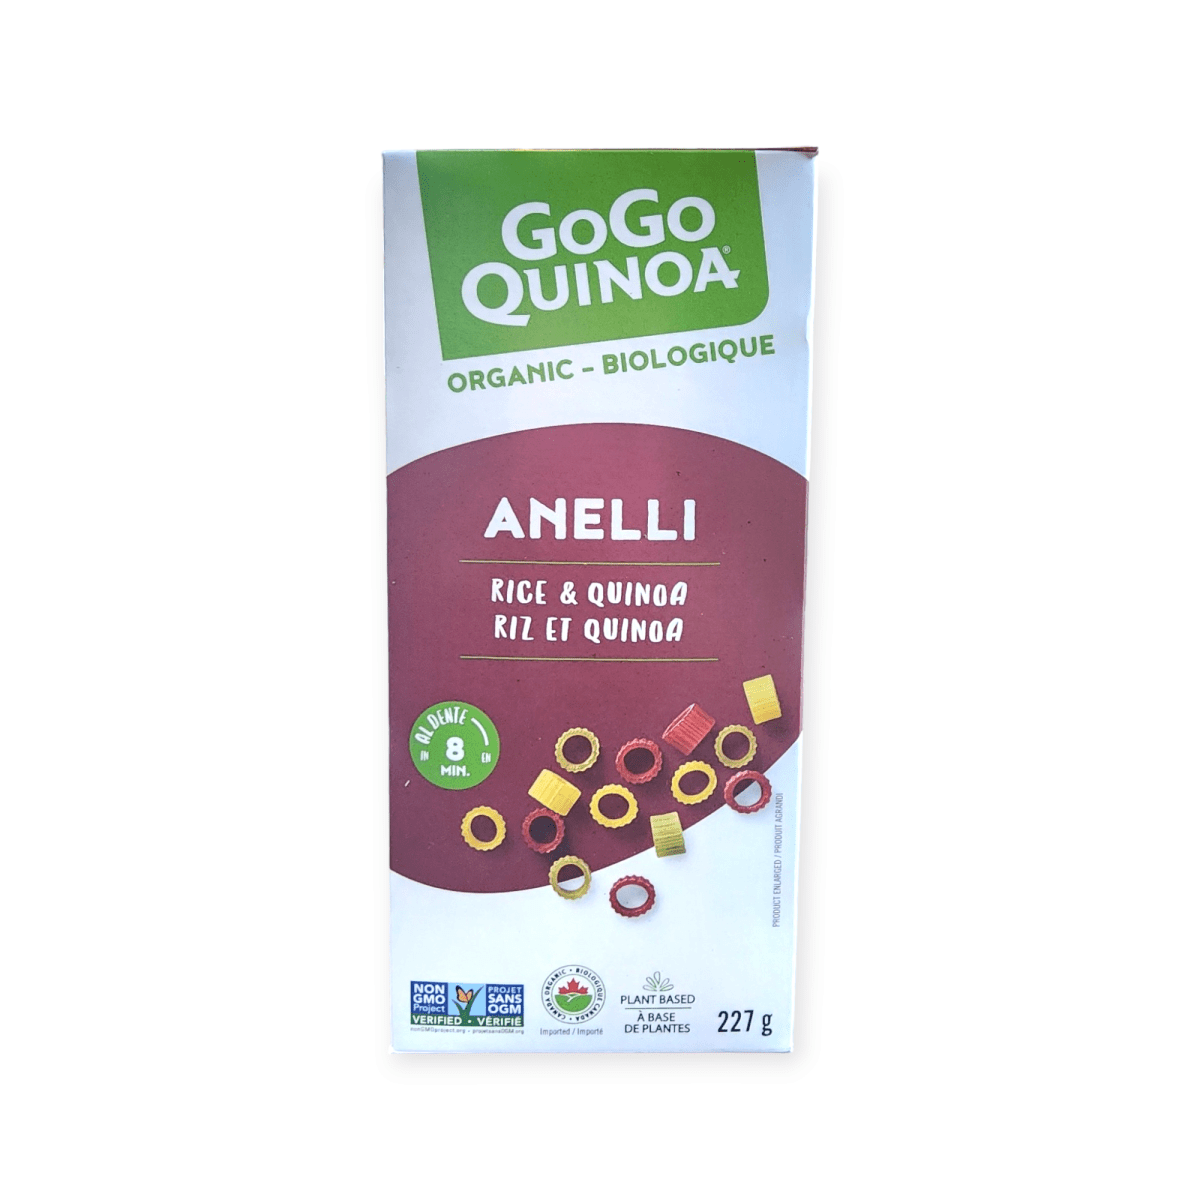 GoGo Quinoa Anelli Rice Quinoa (227g)